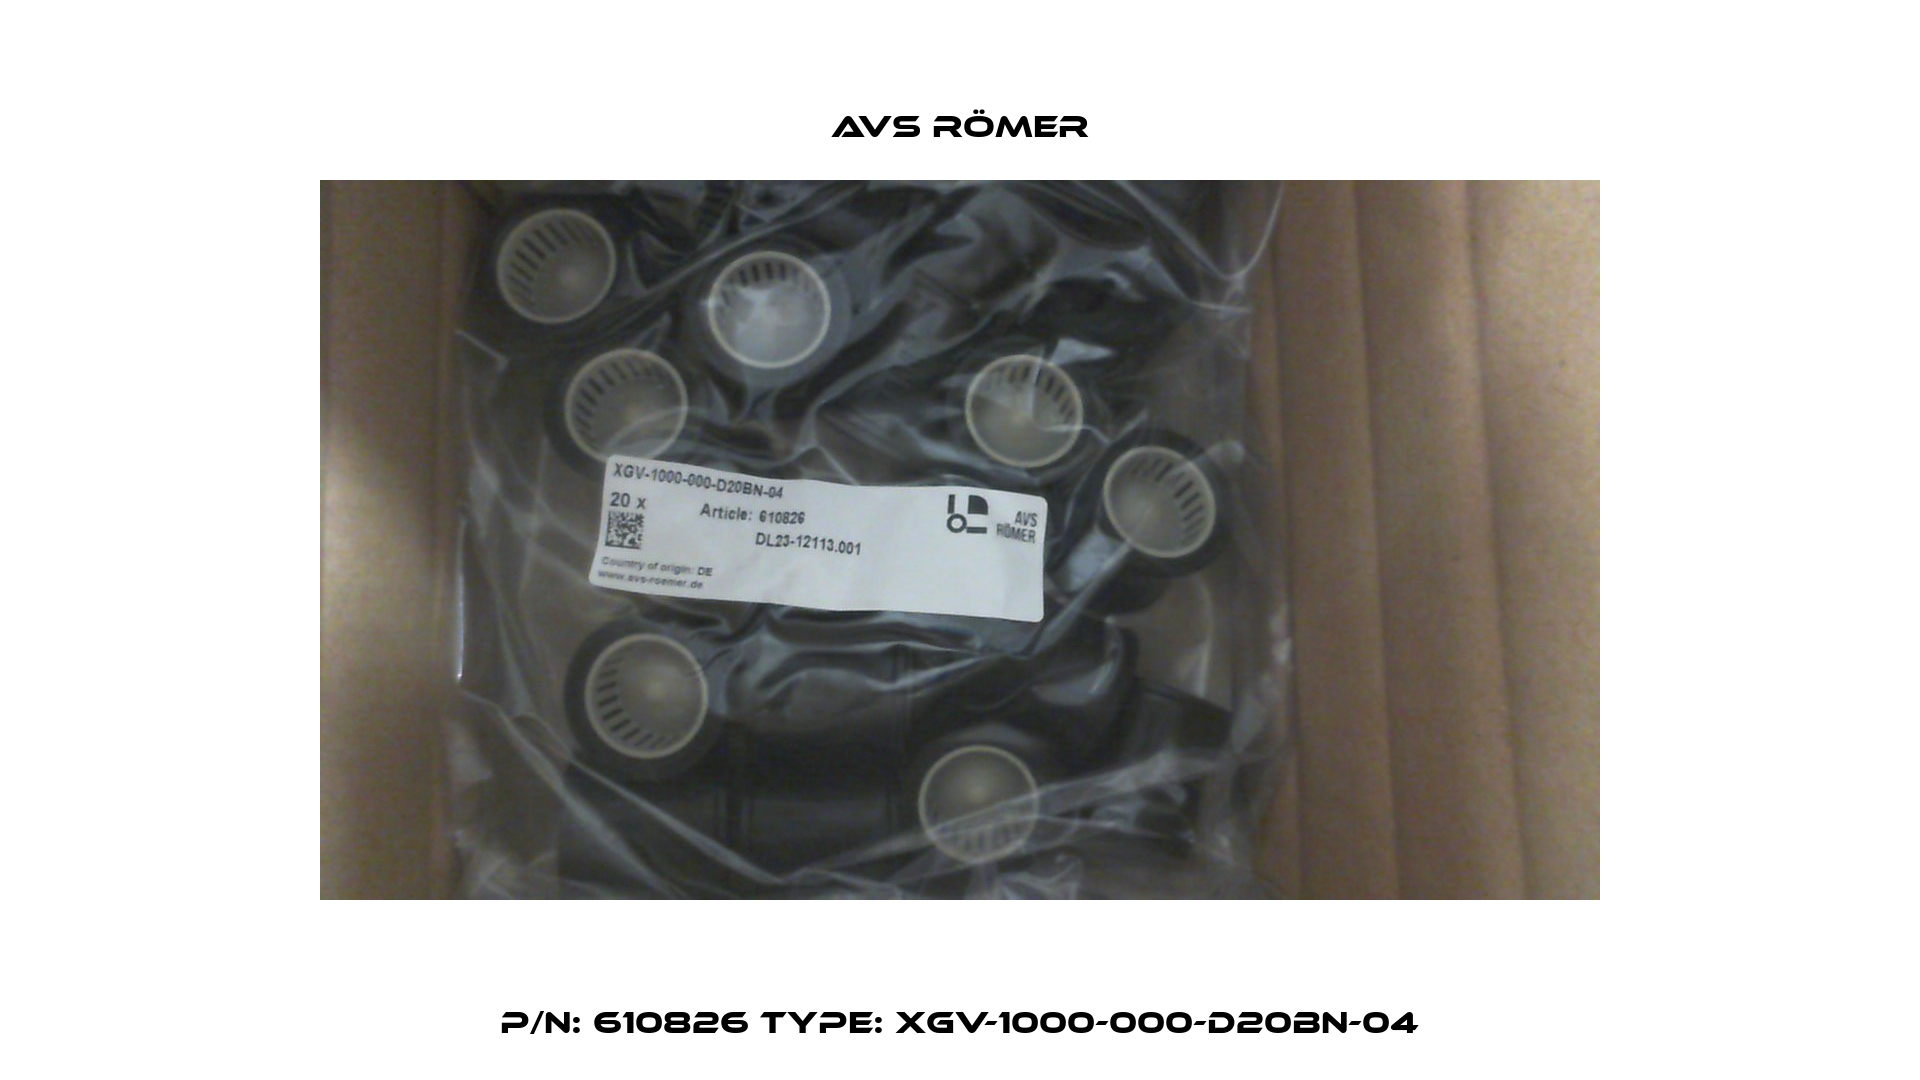 P/N: 610826 Type: XGV-1000-000-D20BN-04 Avs Römer